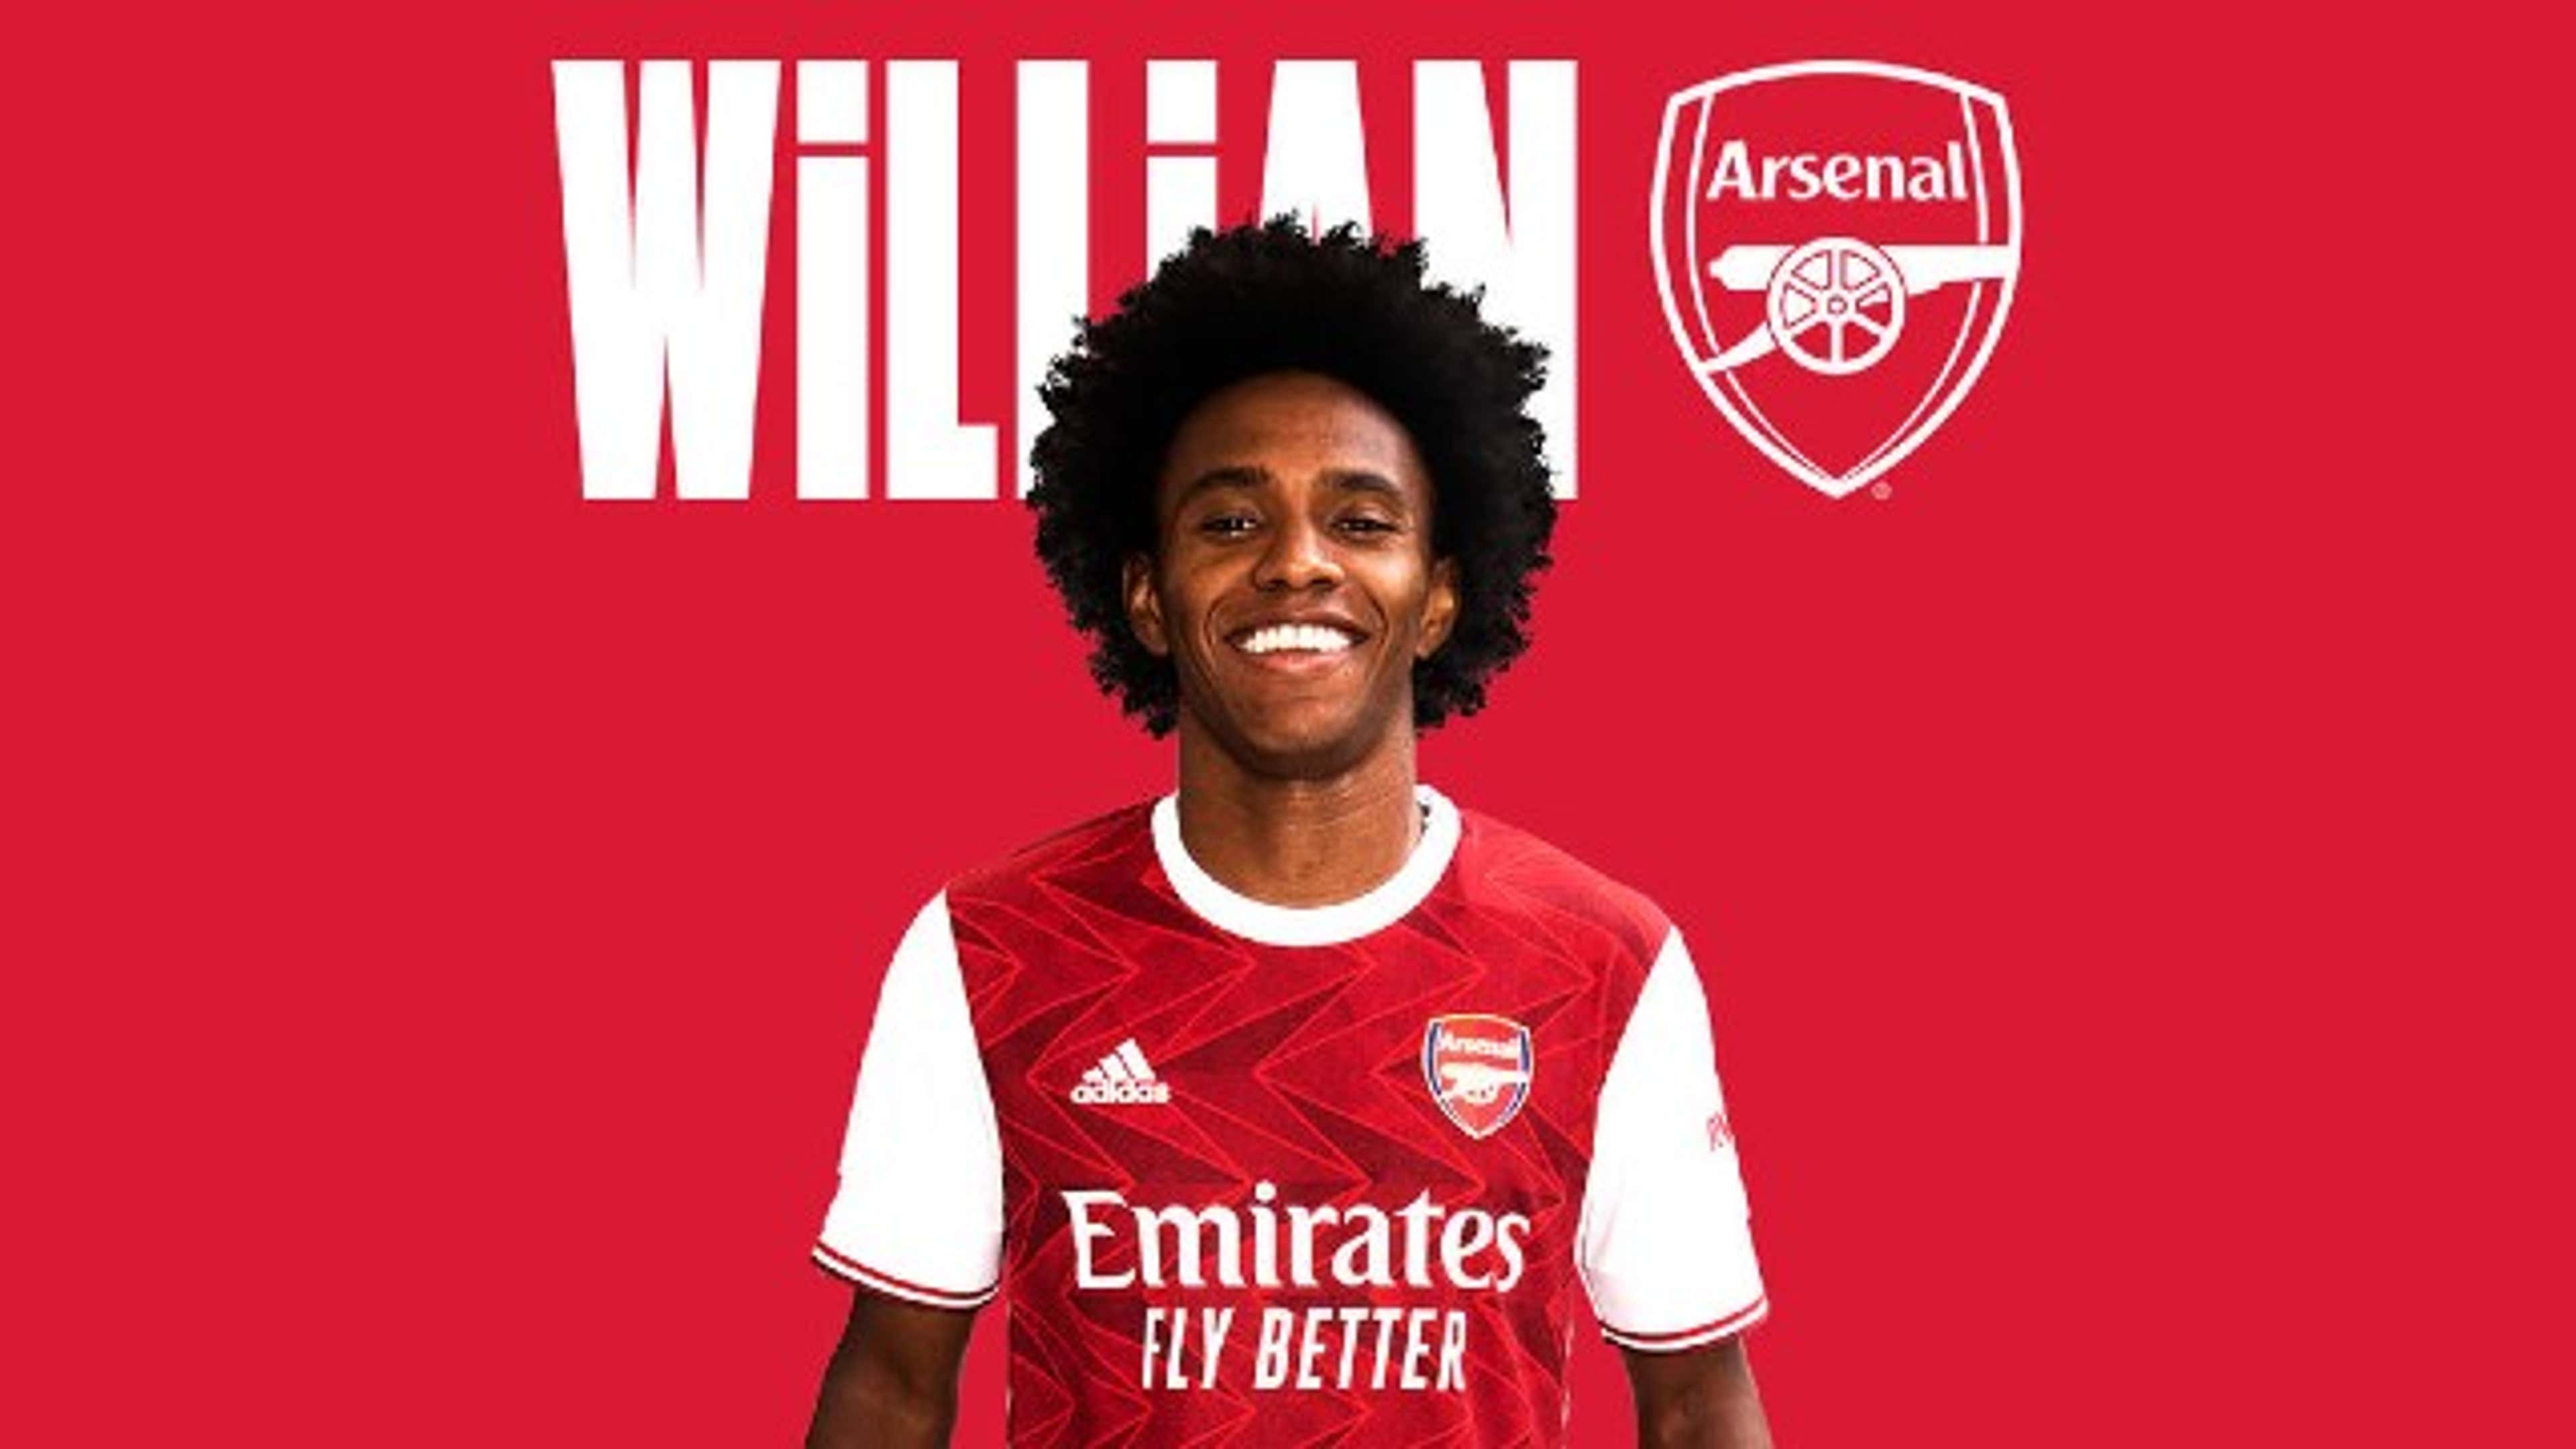 Willian Arsenal 08142020